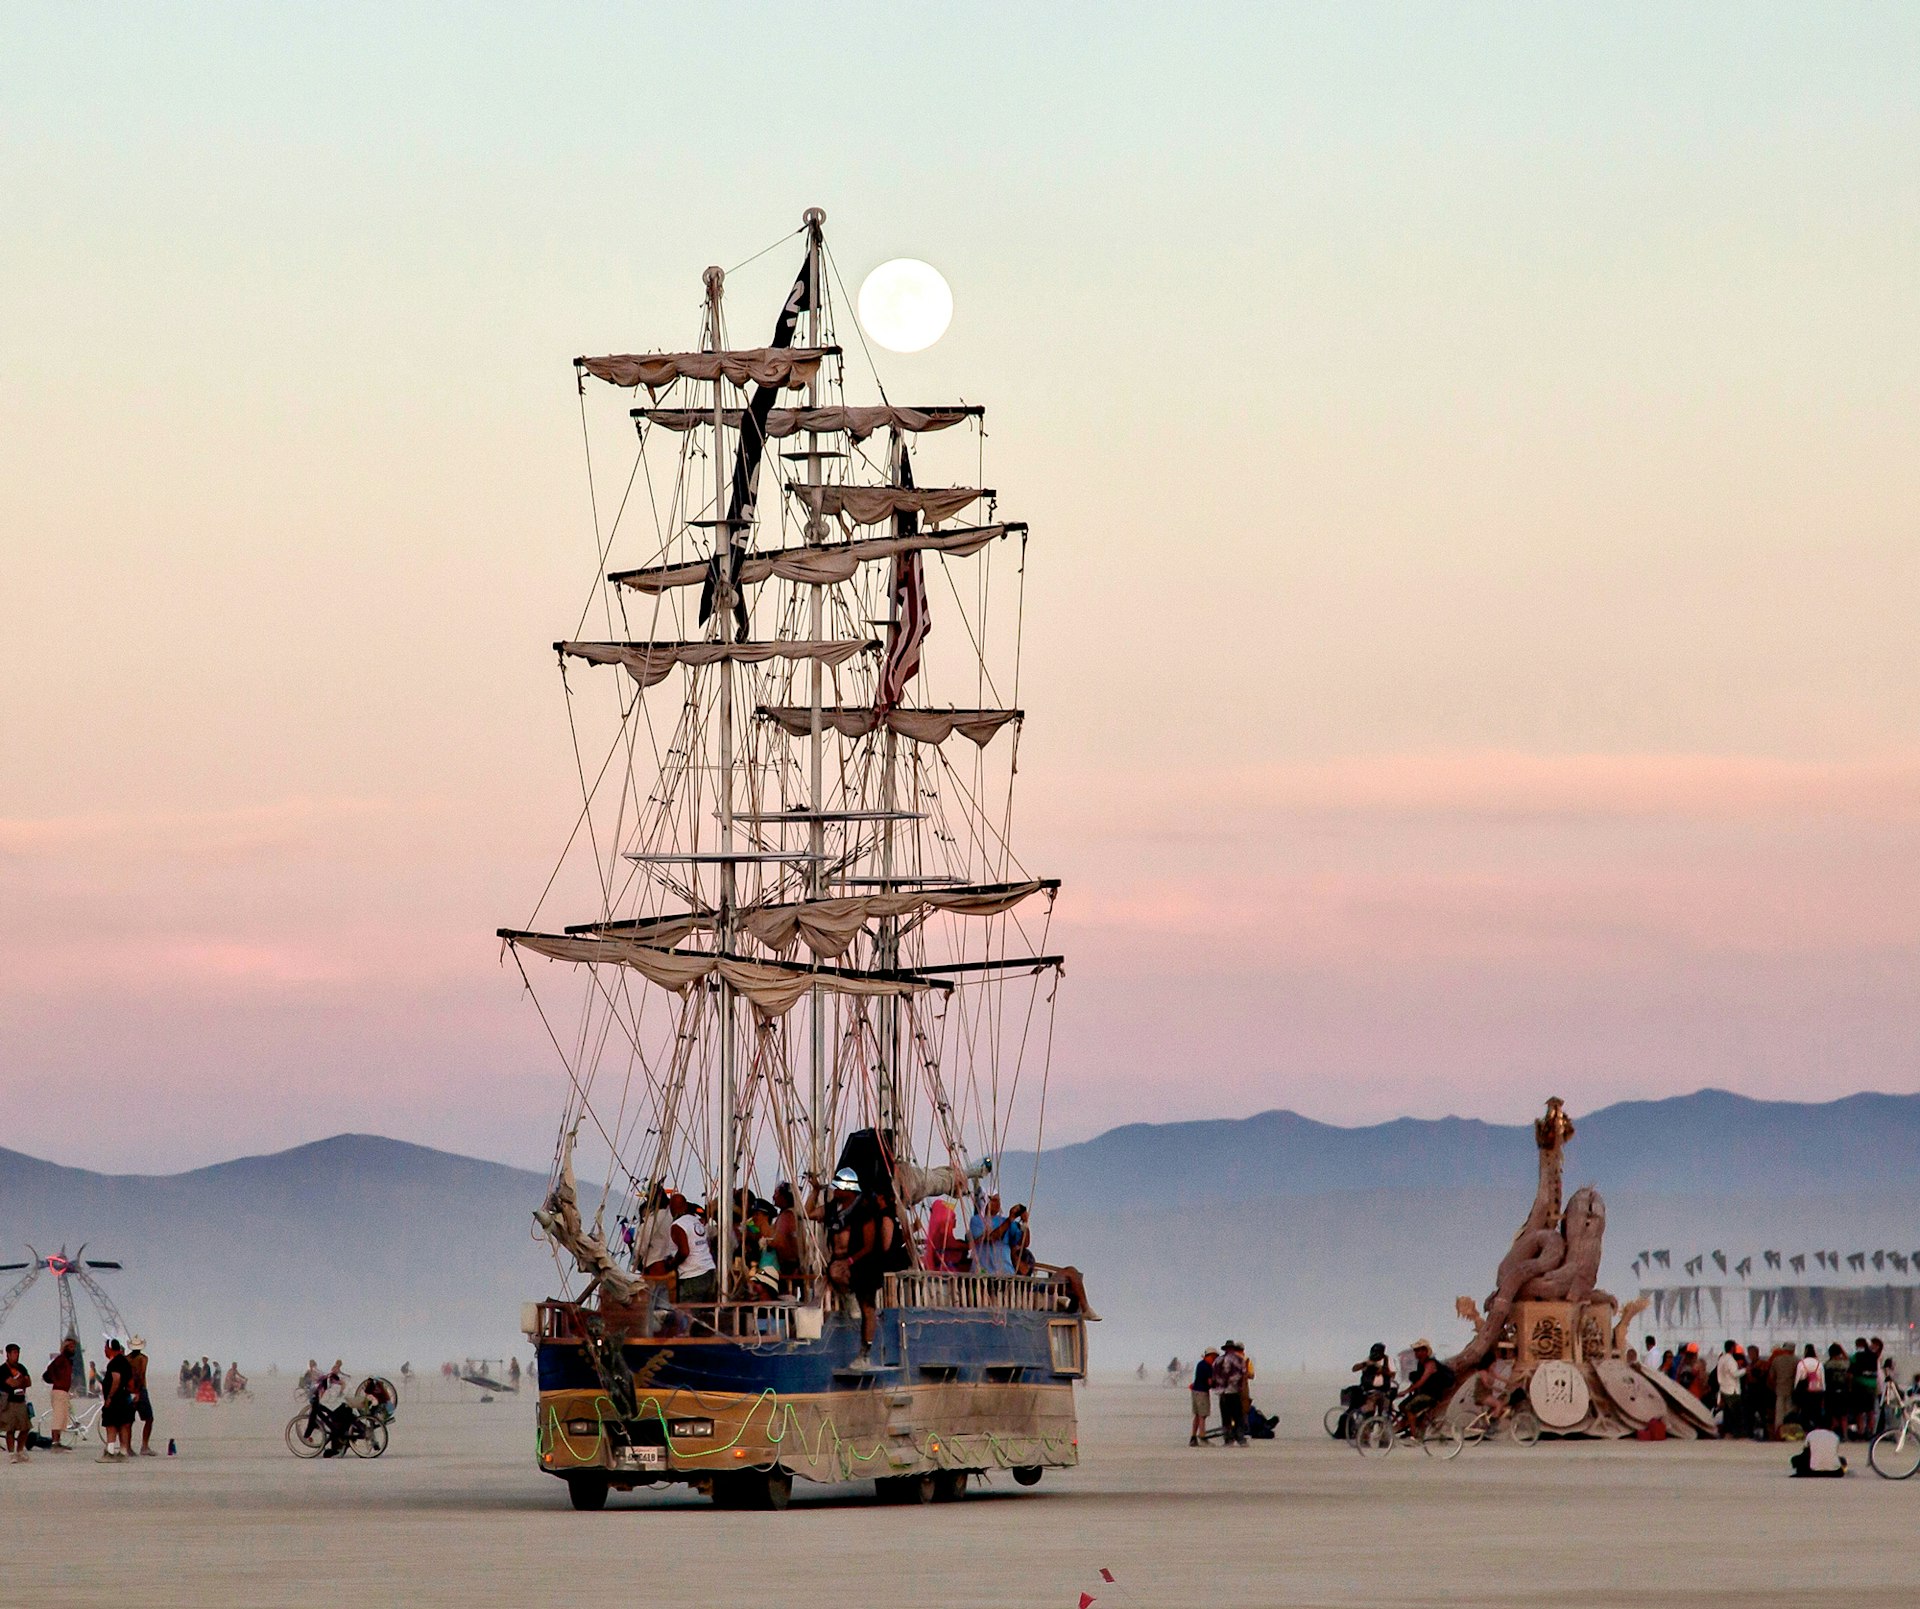 A tall sailing ship coasts the playa at sunset 